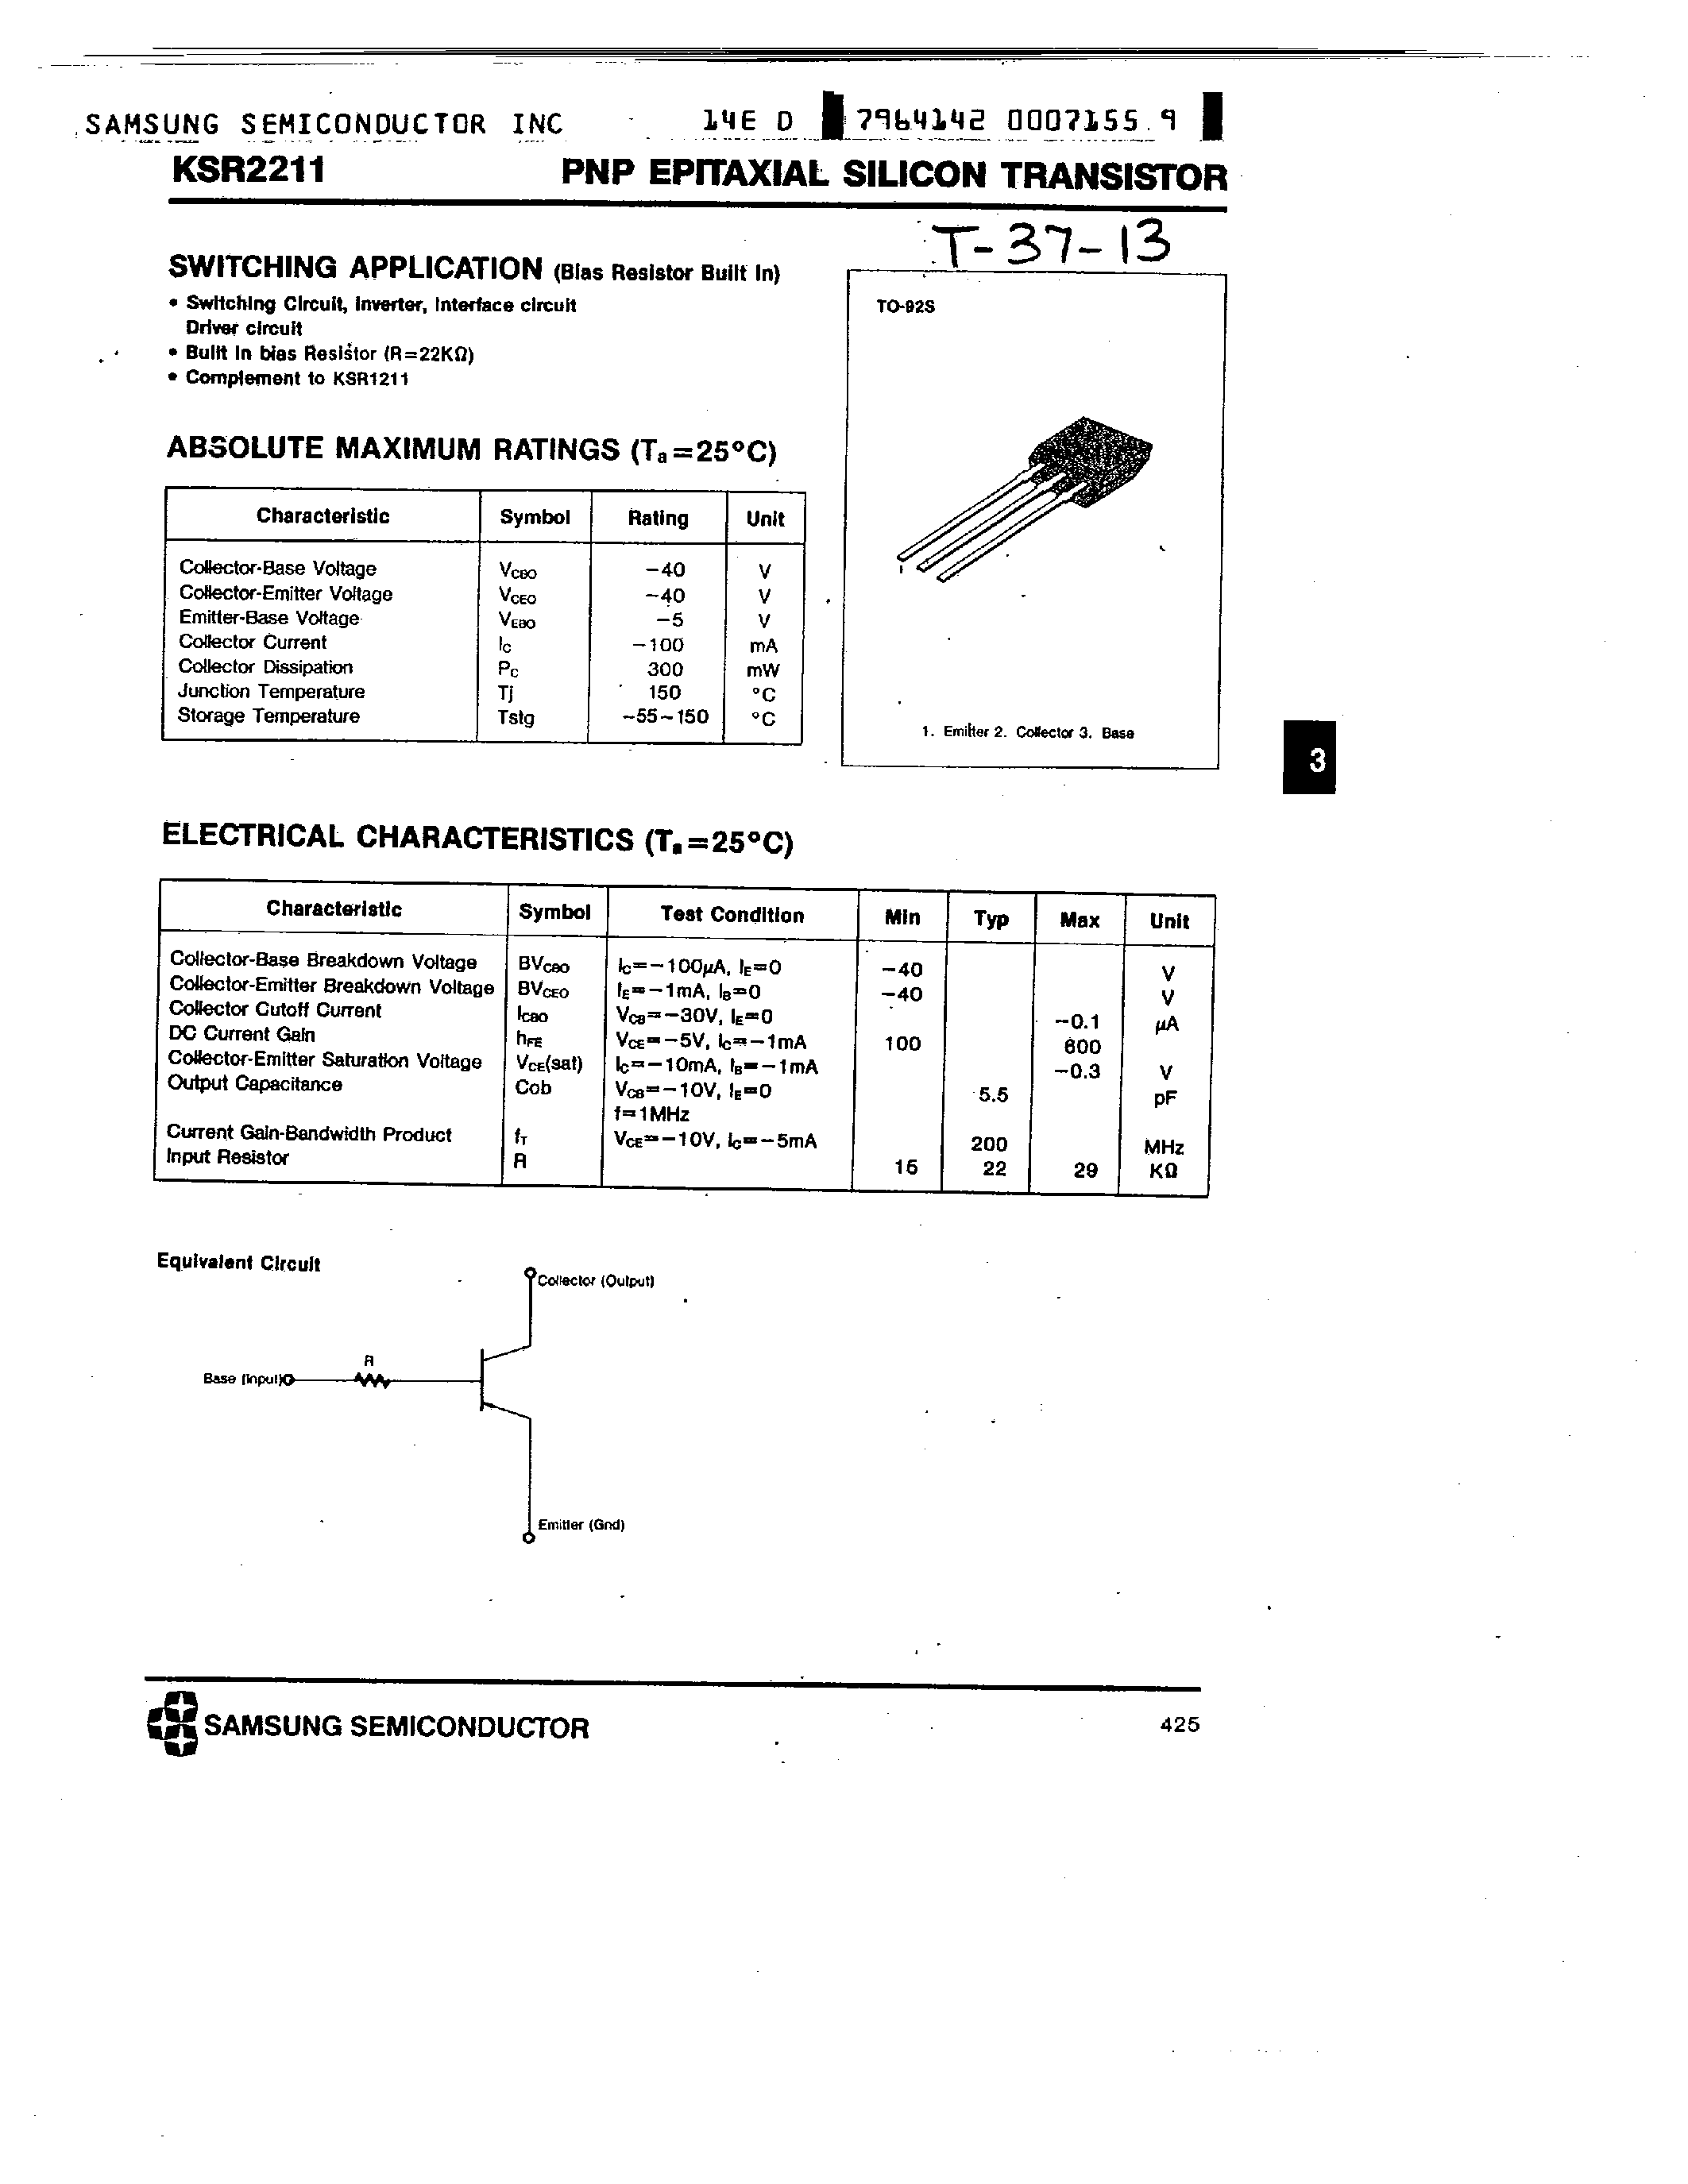 Datasheet KSR2211 - PNP (SWITCHING APPLICATION) page 1